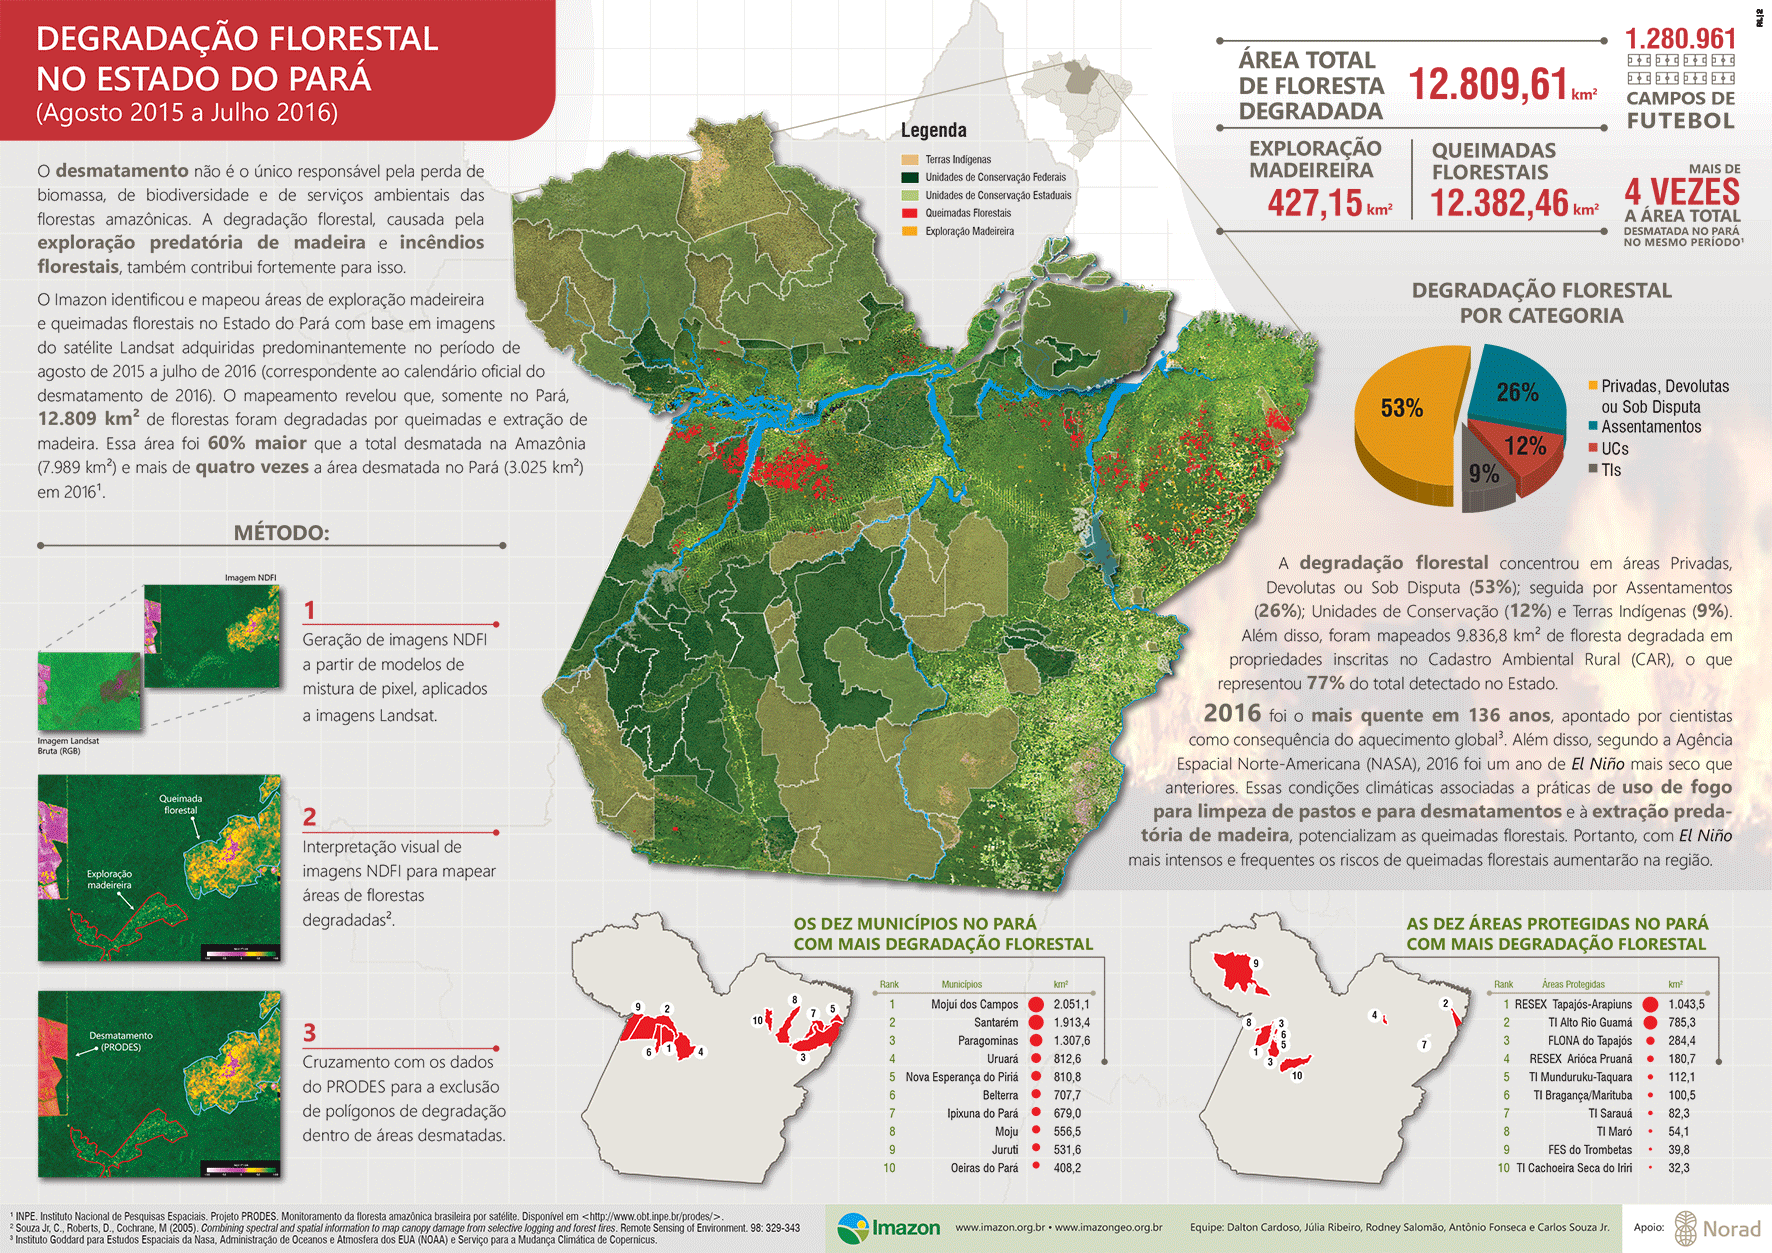 Queimadas Exploracao animado Para - Degradação Florestal no estado do Pará (agosto de 2015 a julho de 2016)